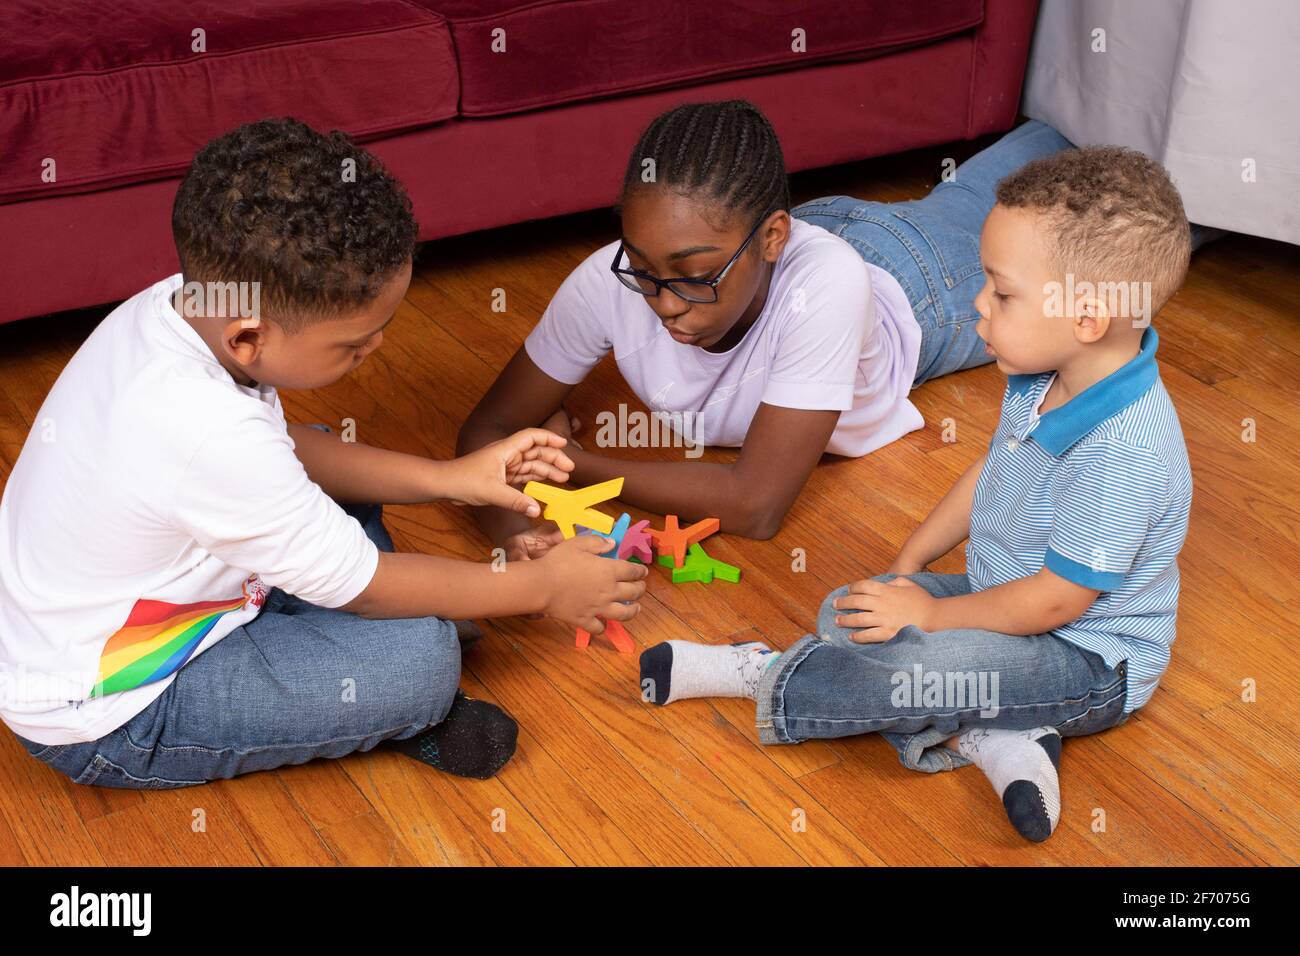 7-jähriger Junge, der mit Holzstapelteilen spielt, balanciert Spiel mit 12-jähriger Halbschwester, 3-jähriger Bruder, der durch Beobachtung lernen möchte Stockfoto